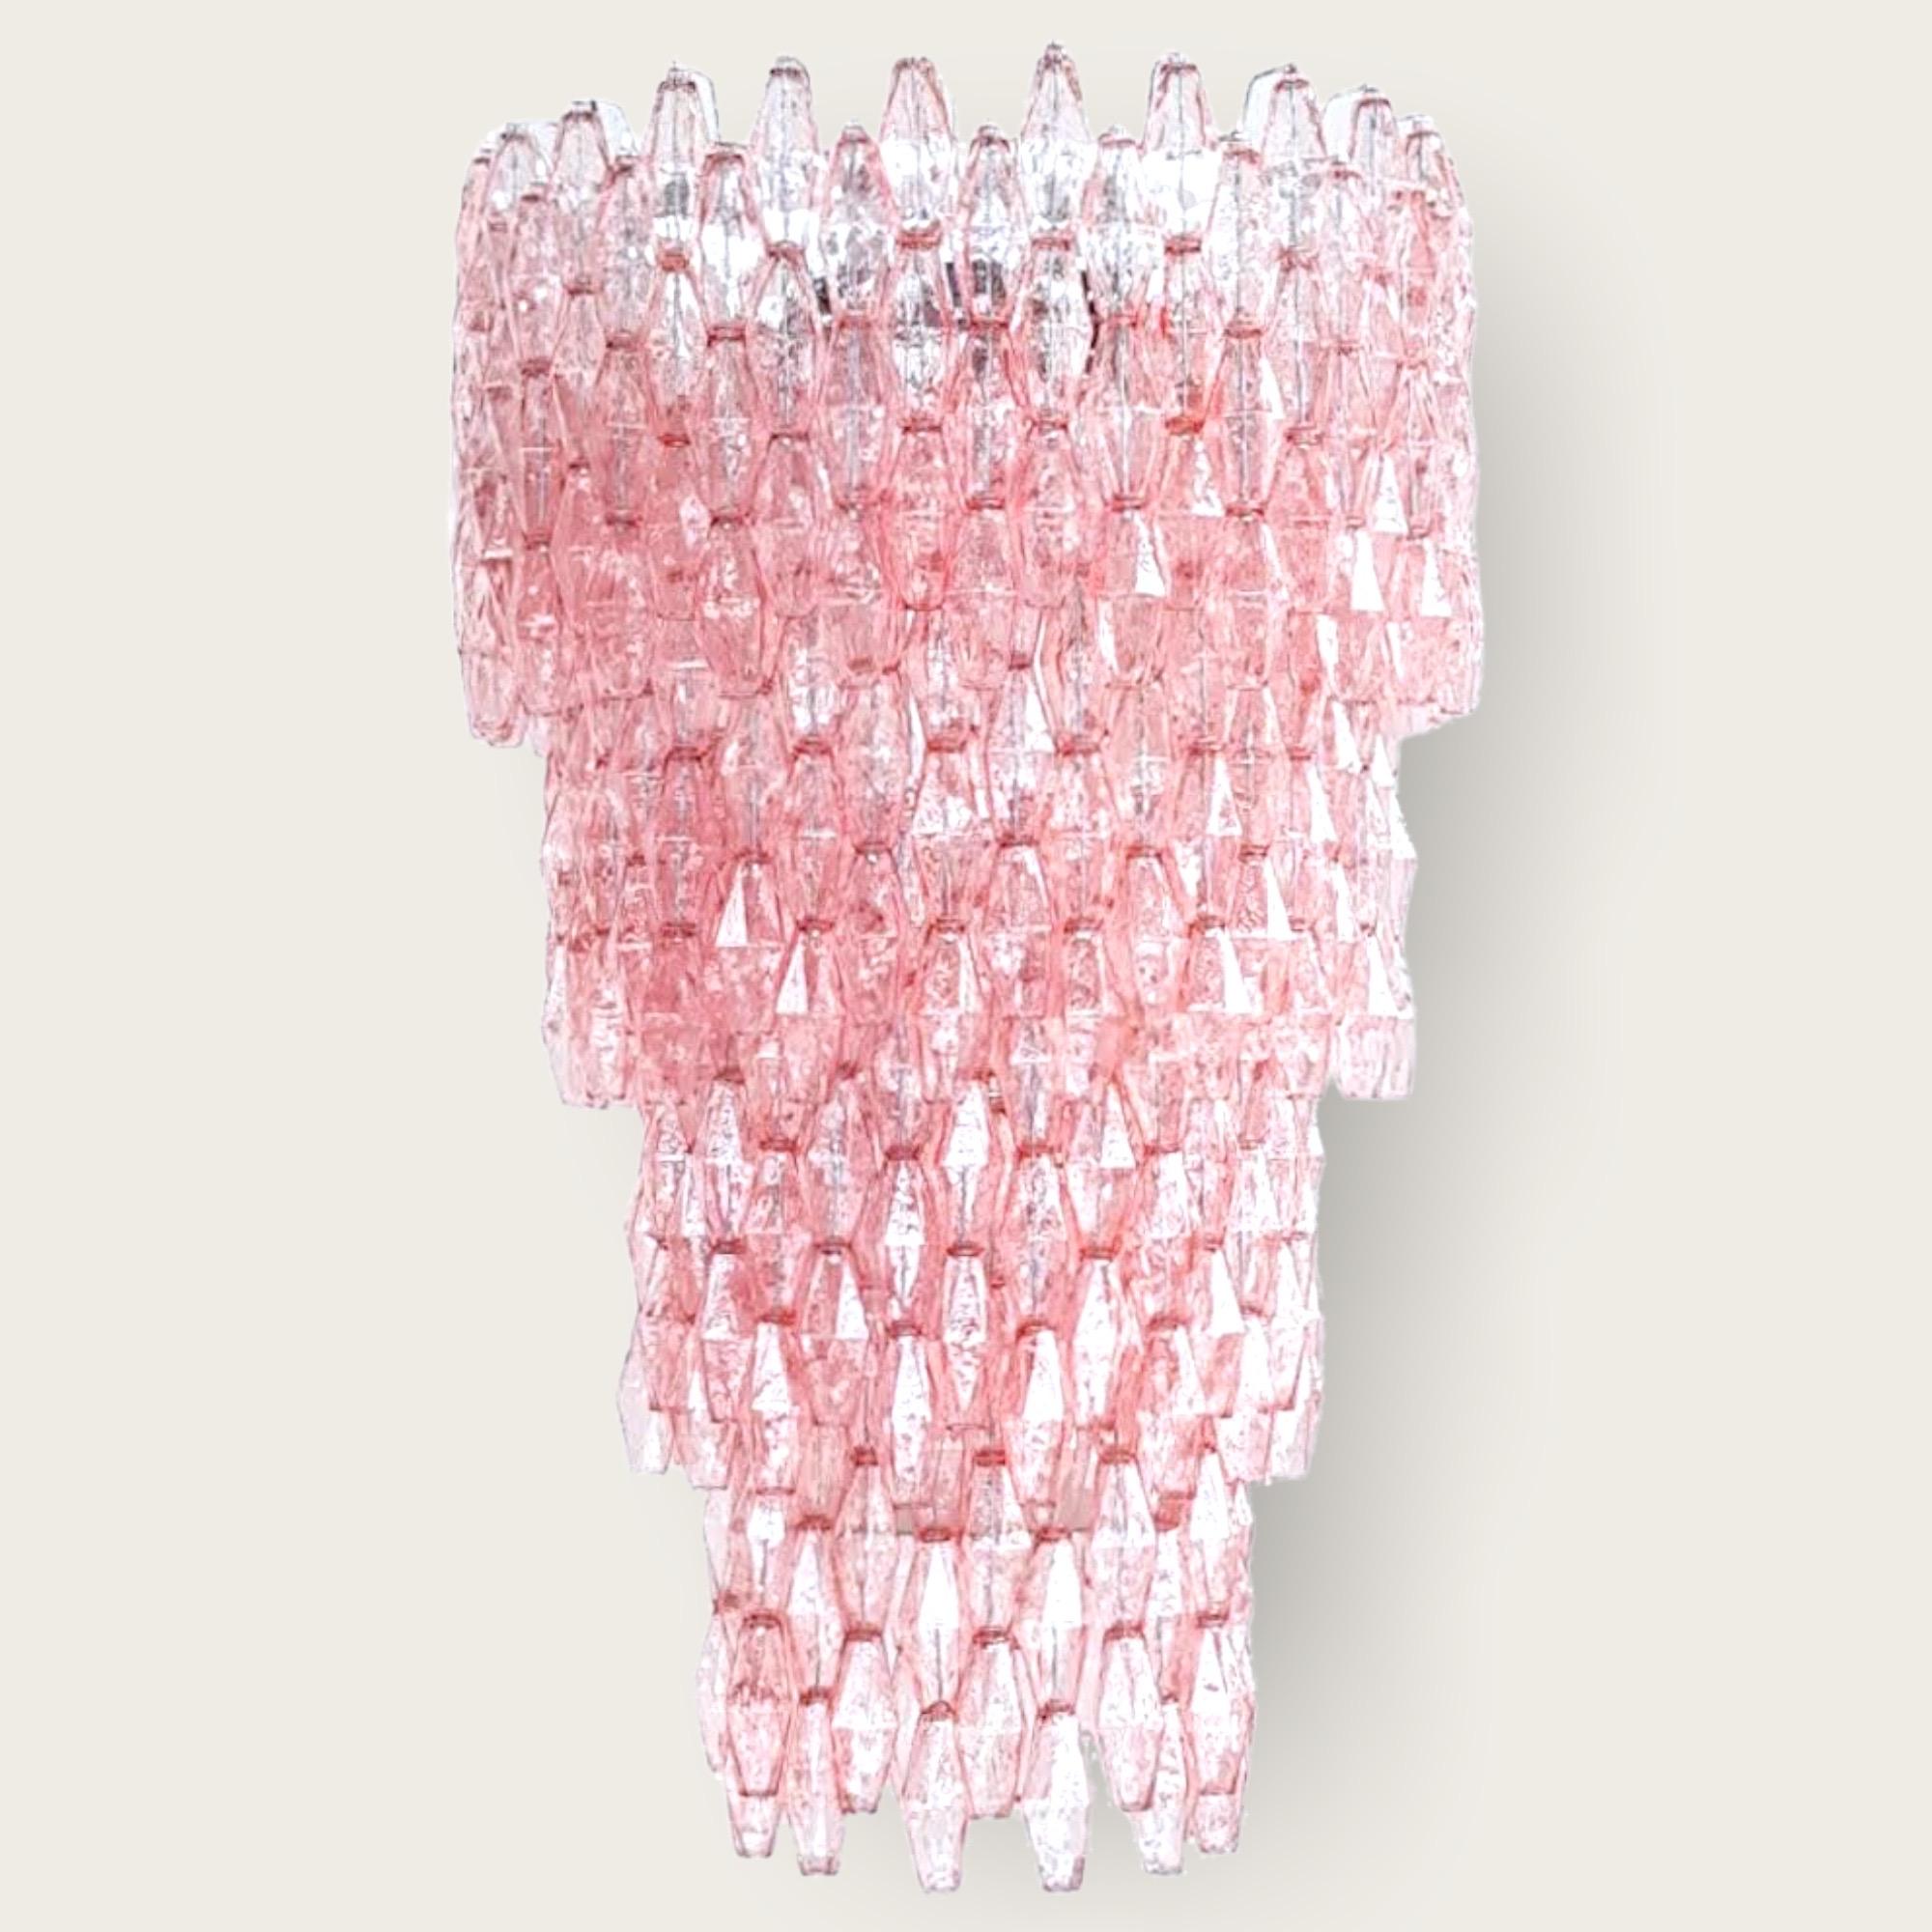 Massive Pink Poliedri Murano Chandelier For Sale 4